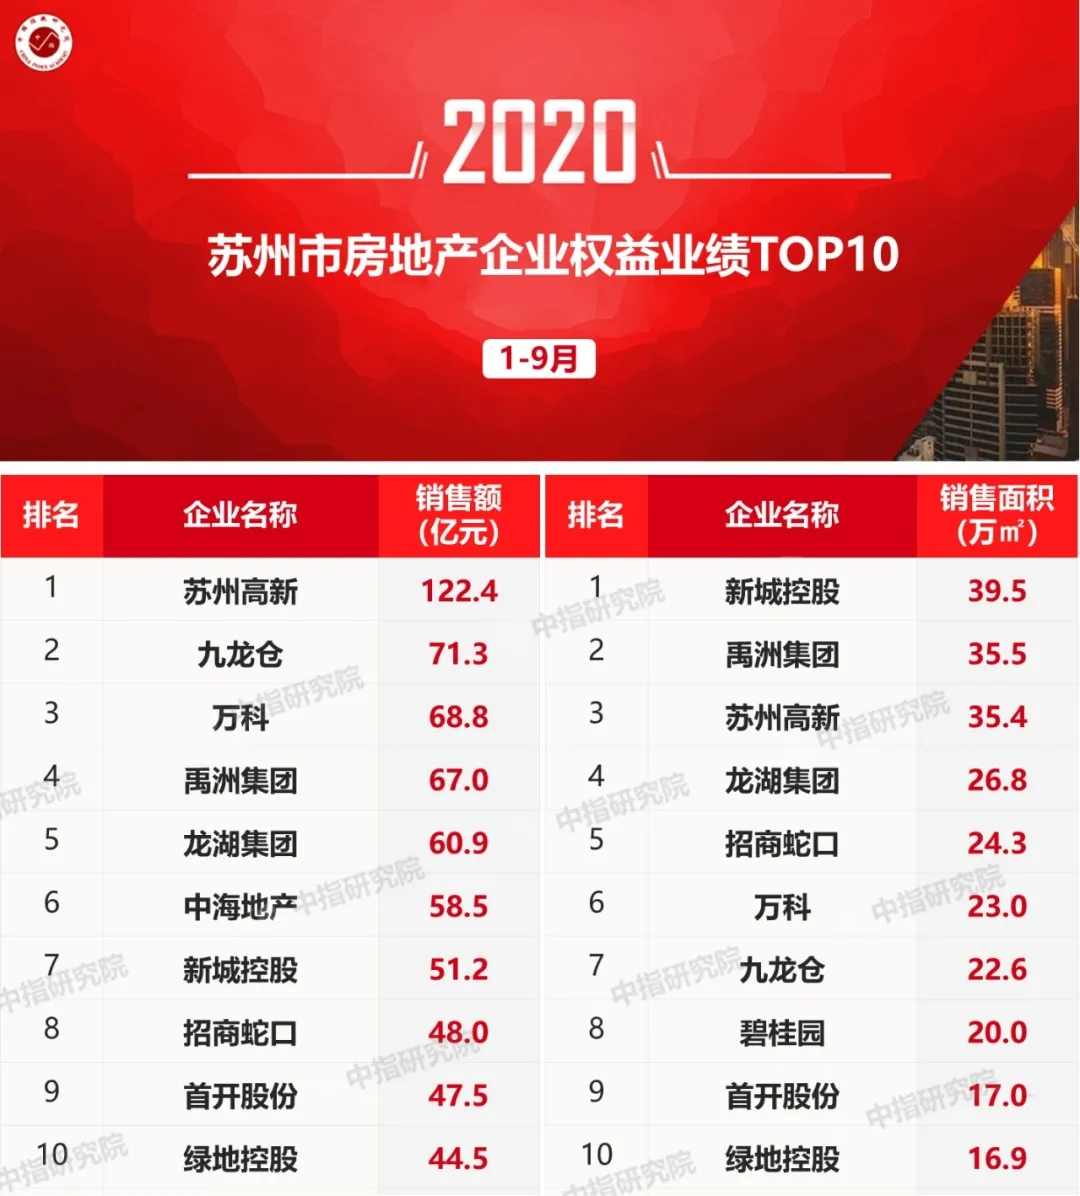 2020年1-9月环沪房地产企业销售业绩排行榜